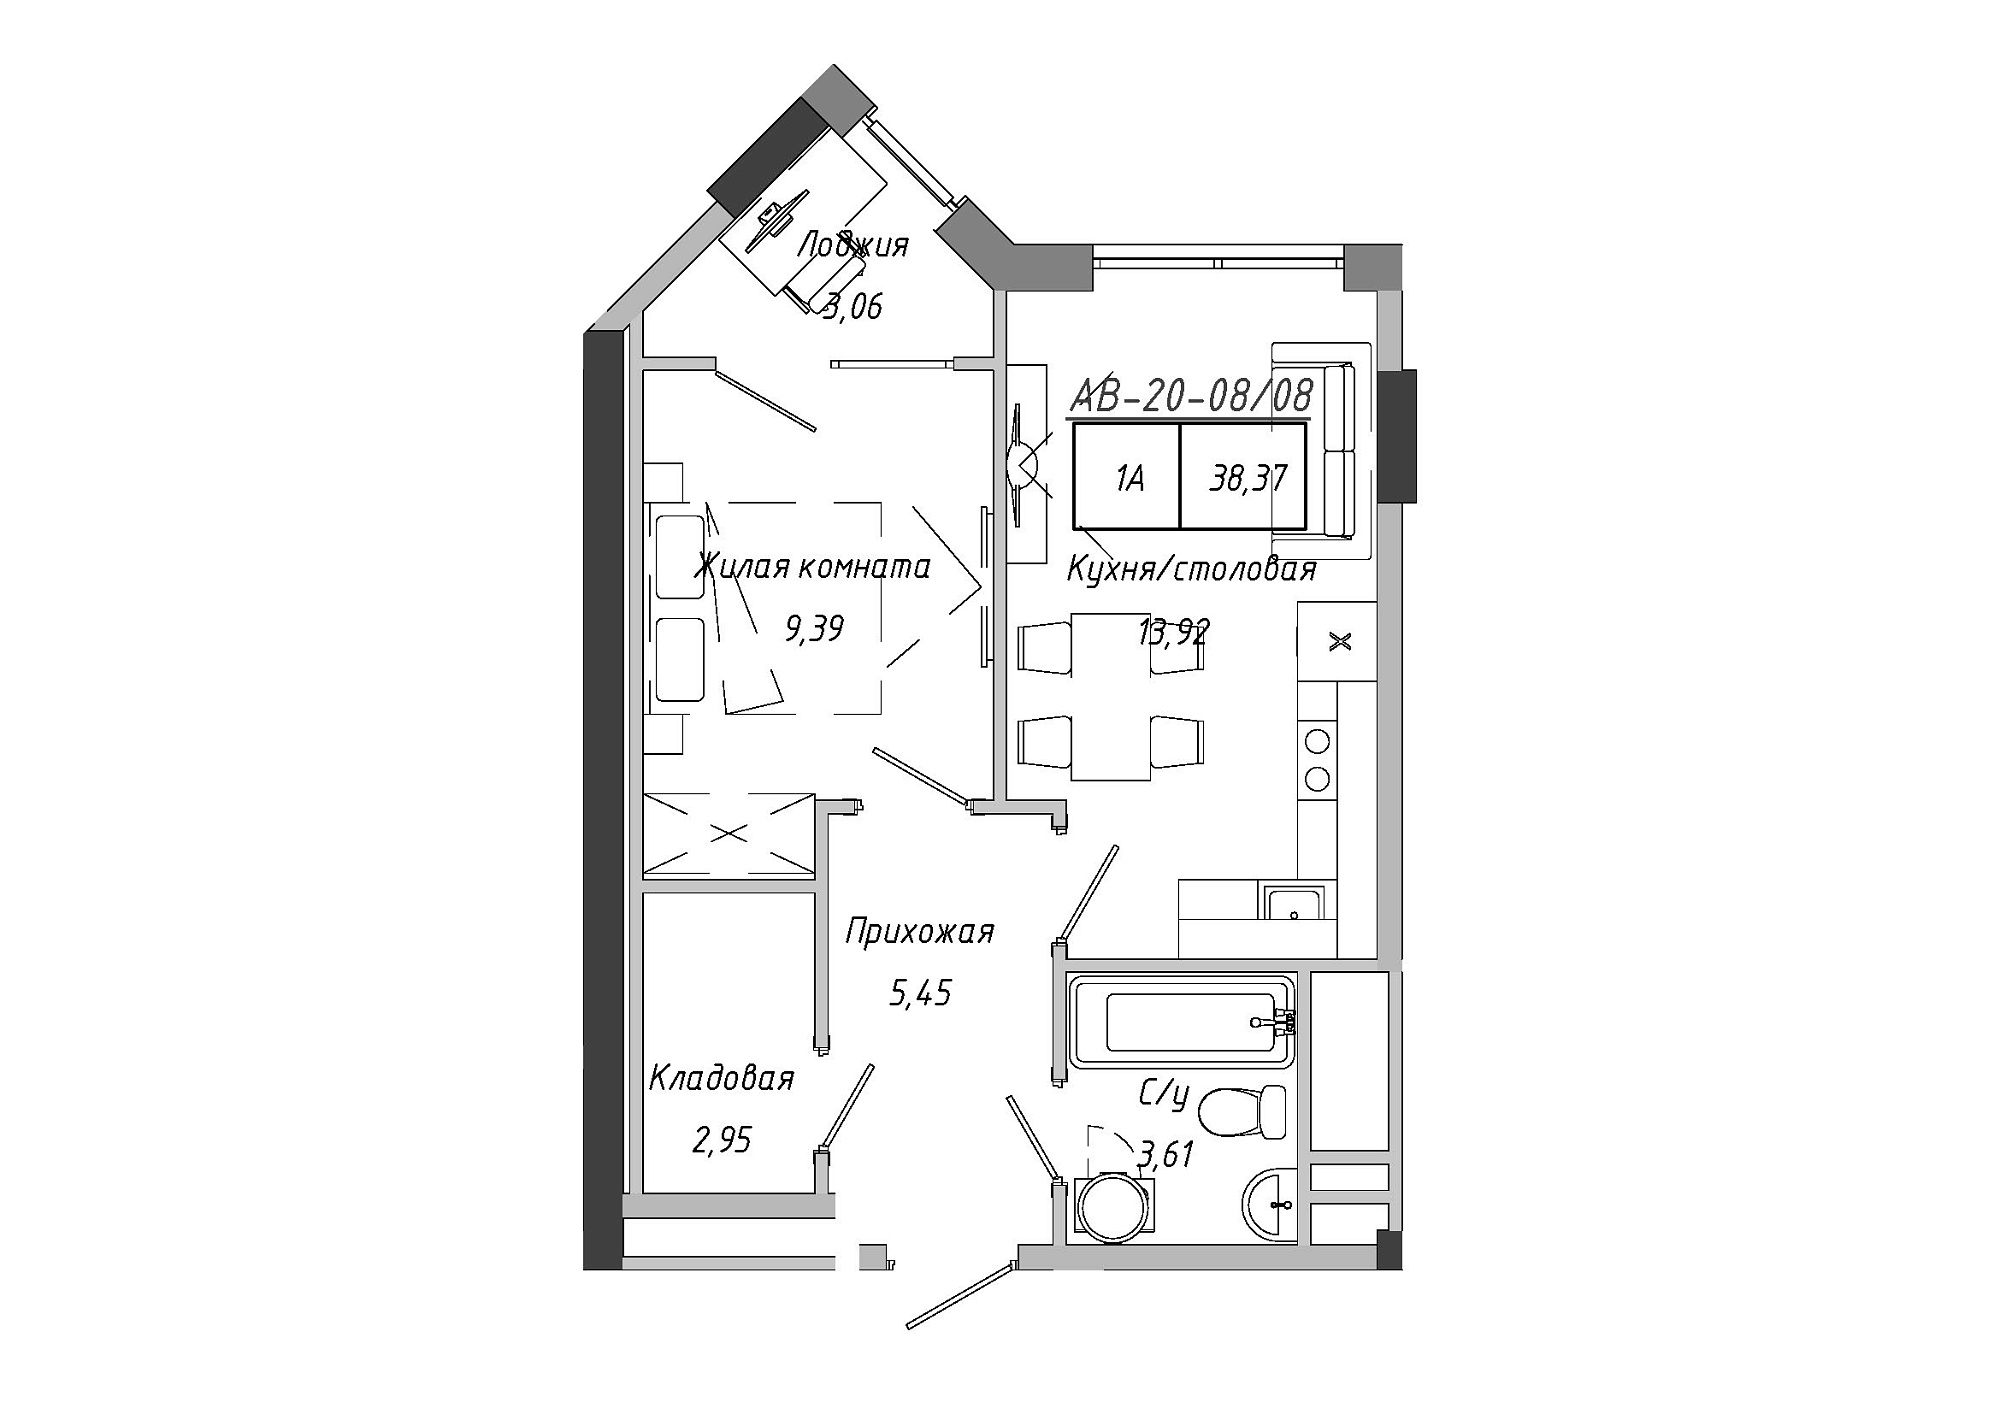 Планировка 1-к квартира площей 38.85м2, AB-20-08/00008.